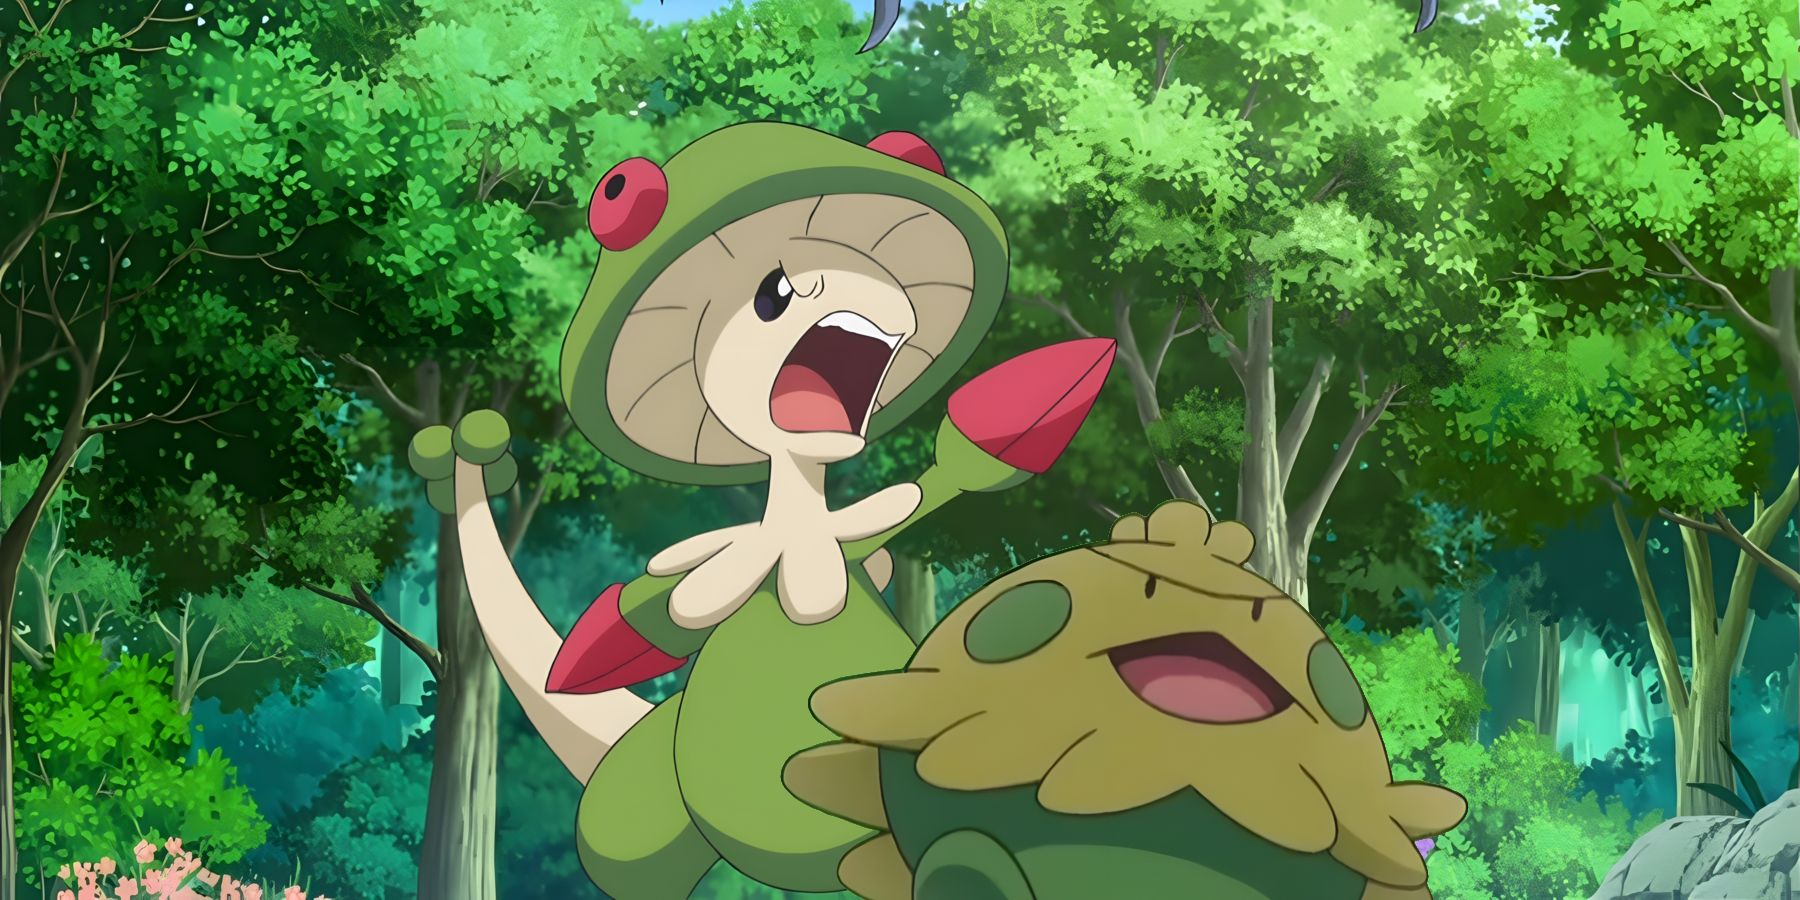 Image of Shroomish and Breloom Mushroom Pokémon